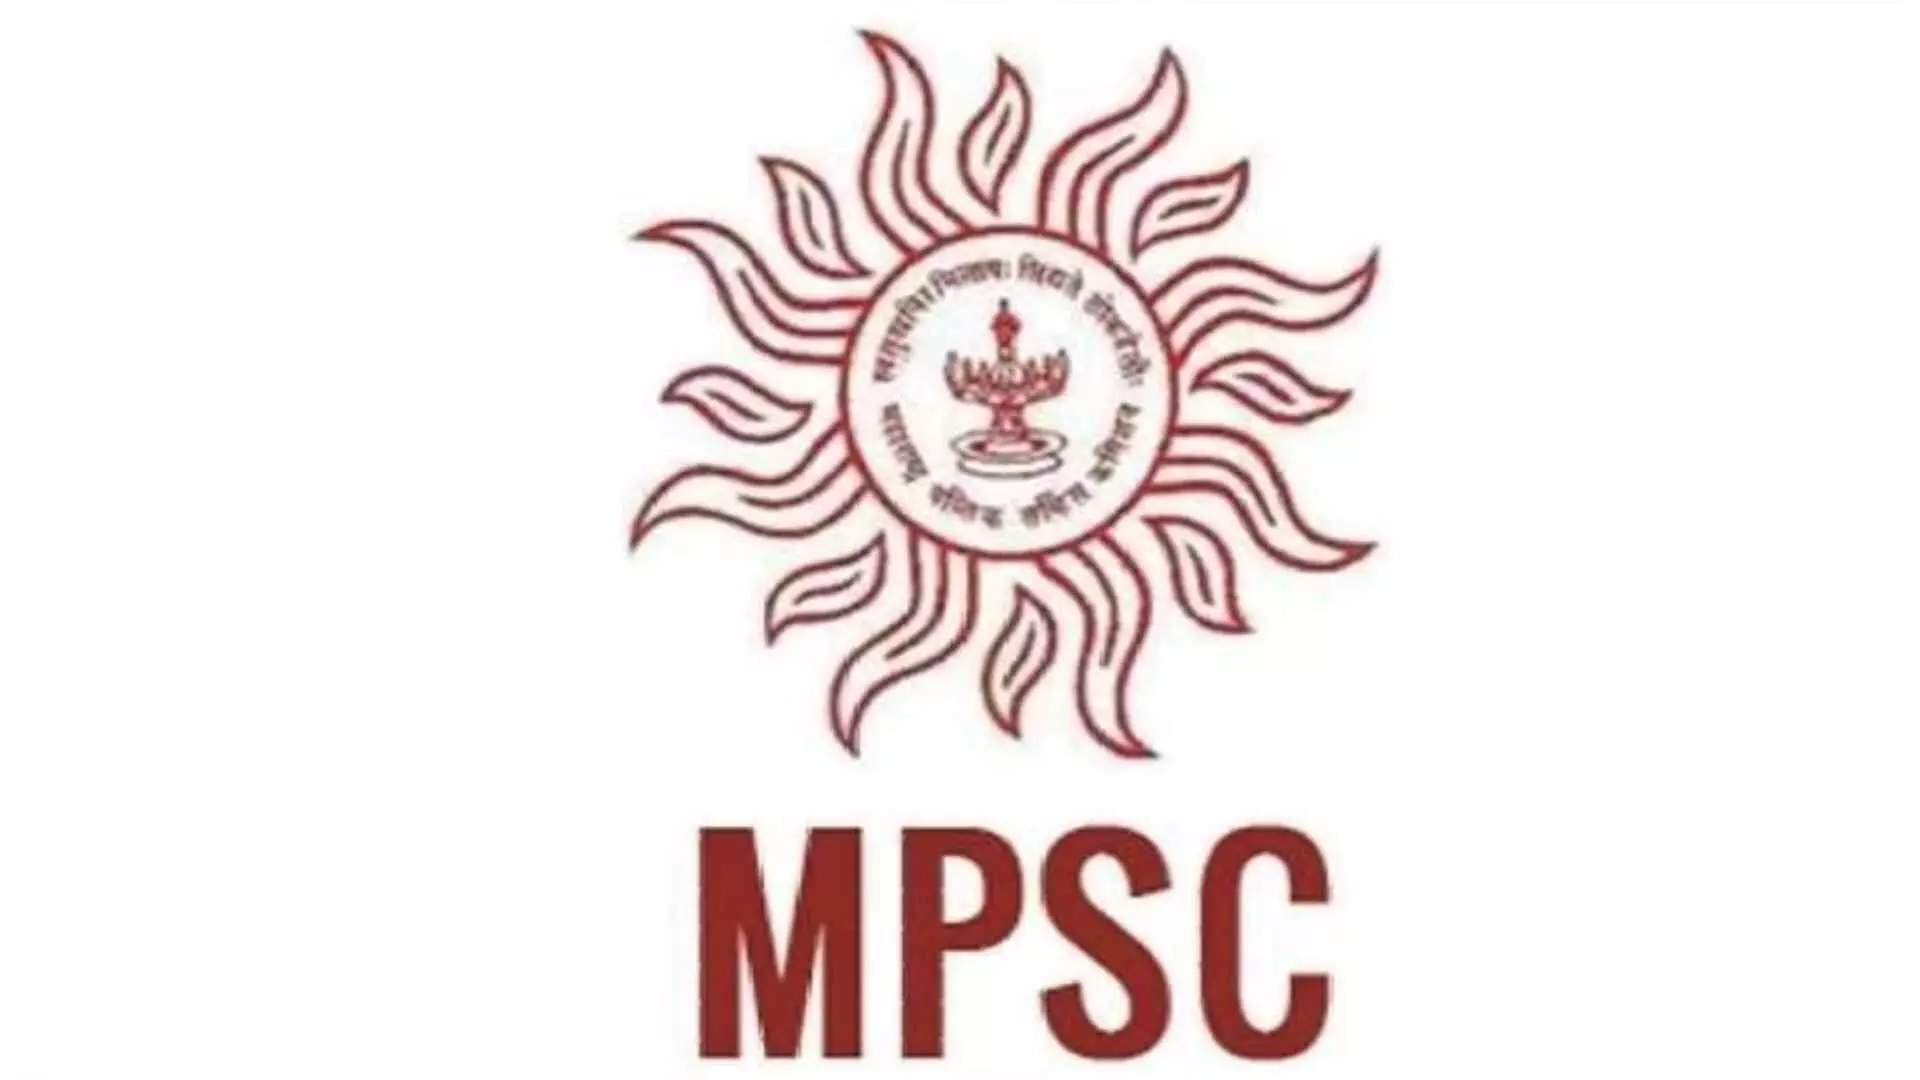 MPSC एमपीएससीच्या घोळामुळे लाखो विद्यार्थ्यांचा जीव टांगणीला